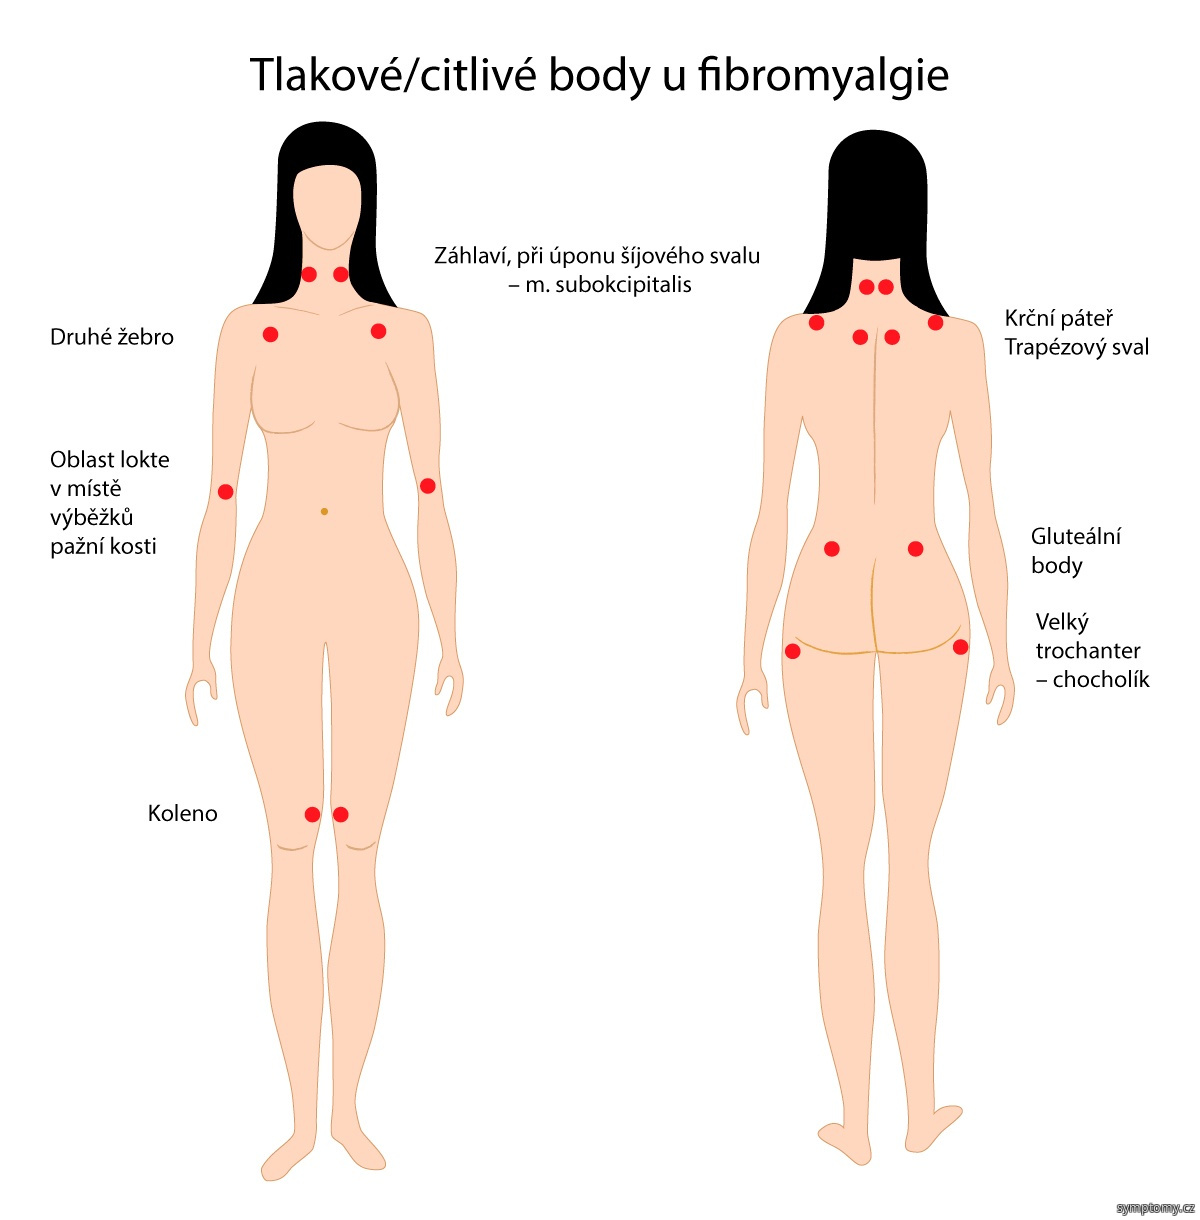 Tlakové - citlivé body u fibromyalgie